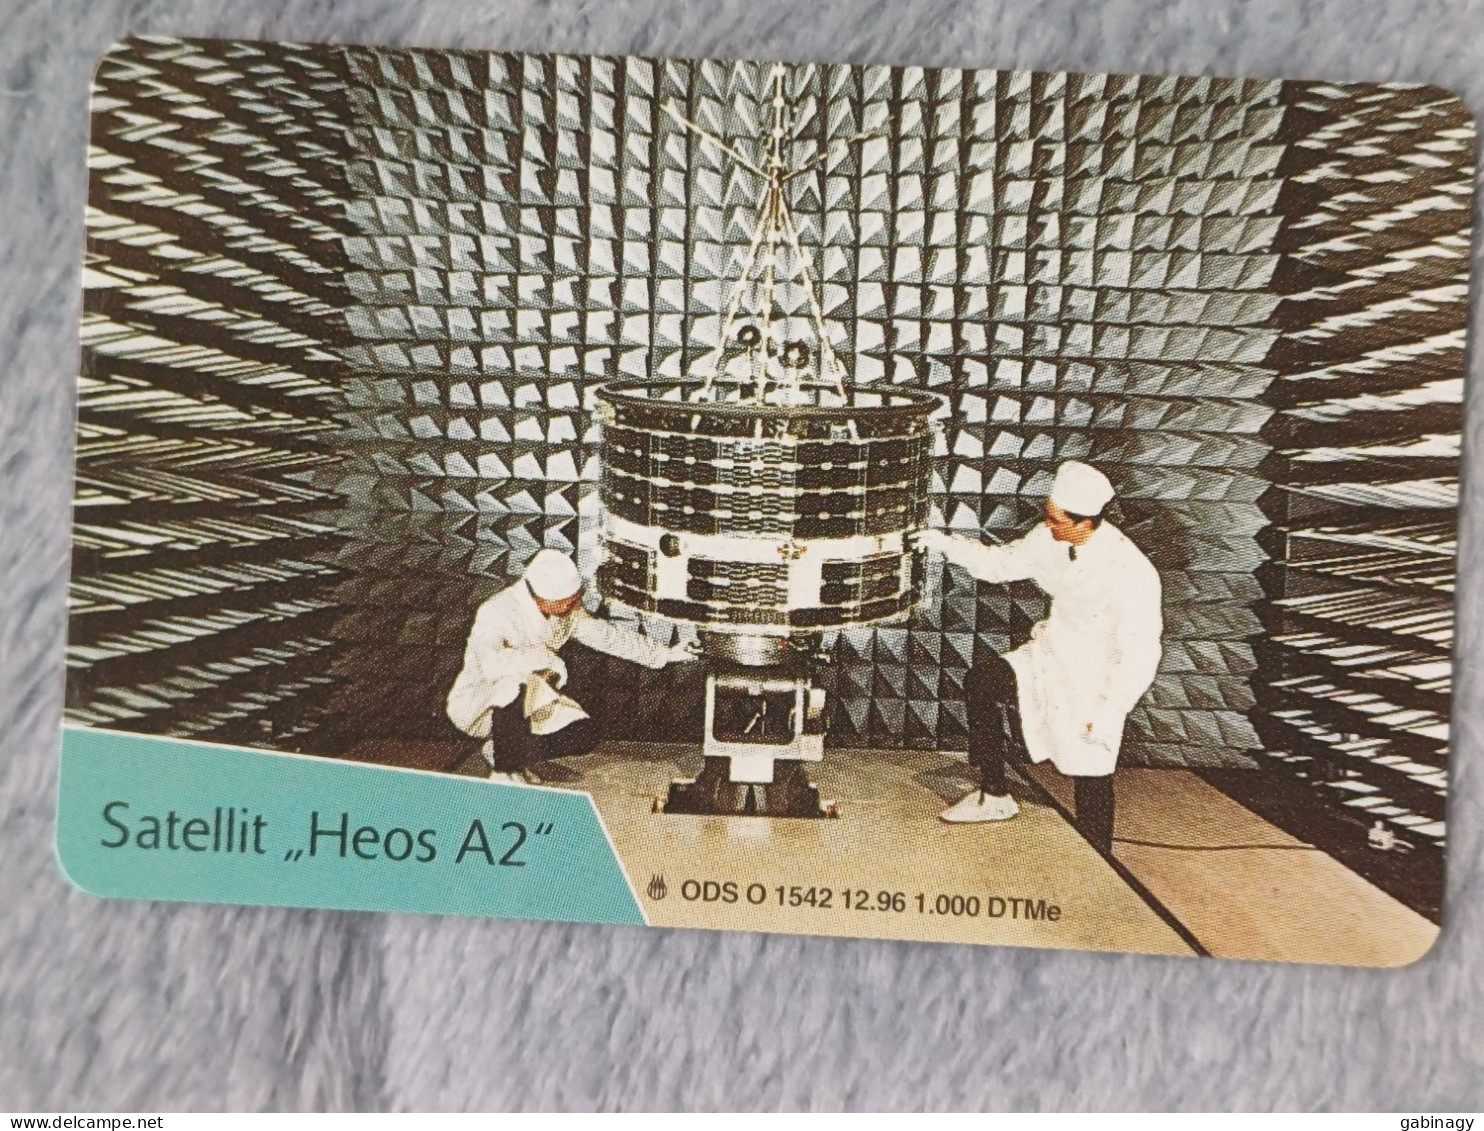 GERMANY-1080 - O 1542 - Eroberung Des Weltraums: Satellit "Heos A2" - SPACE - 1.000ex. - O-Series : Series Clientes Excluidos Servicio De Colección